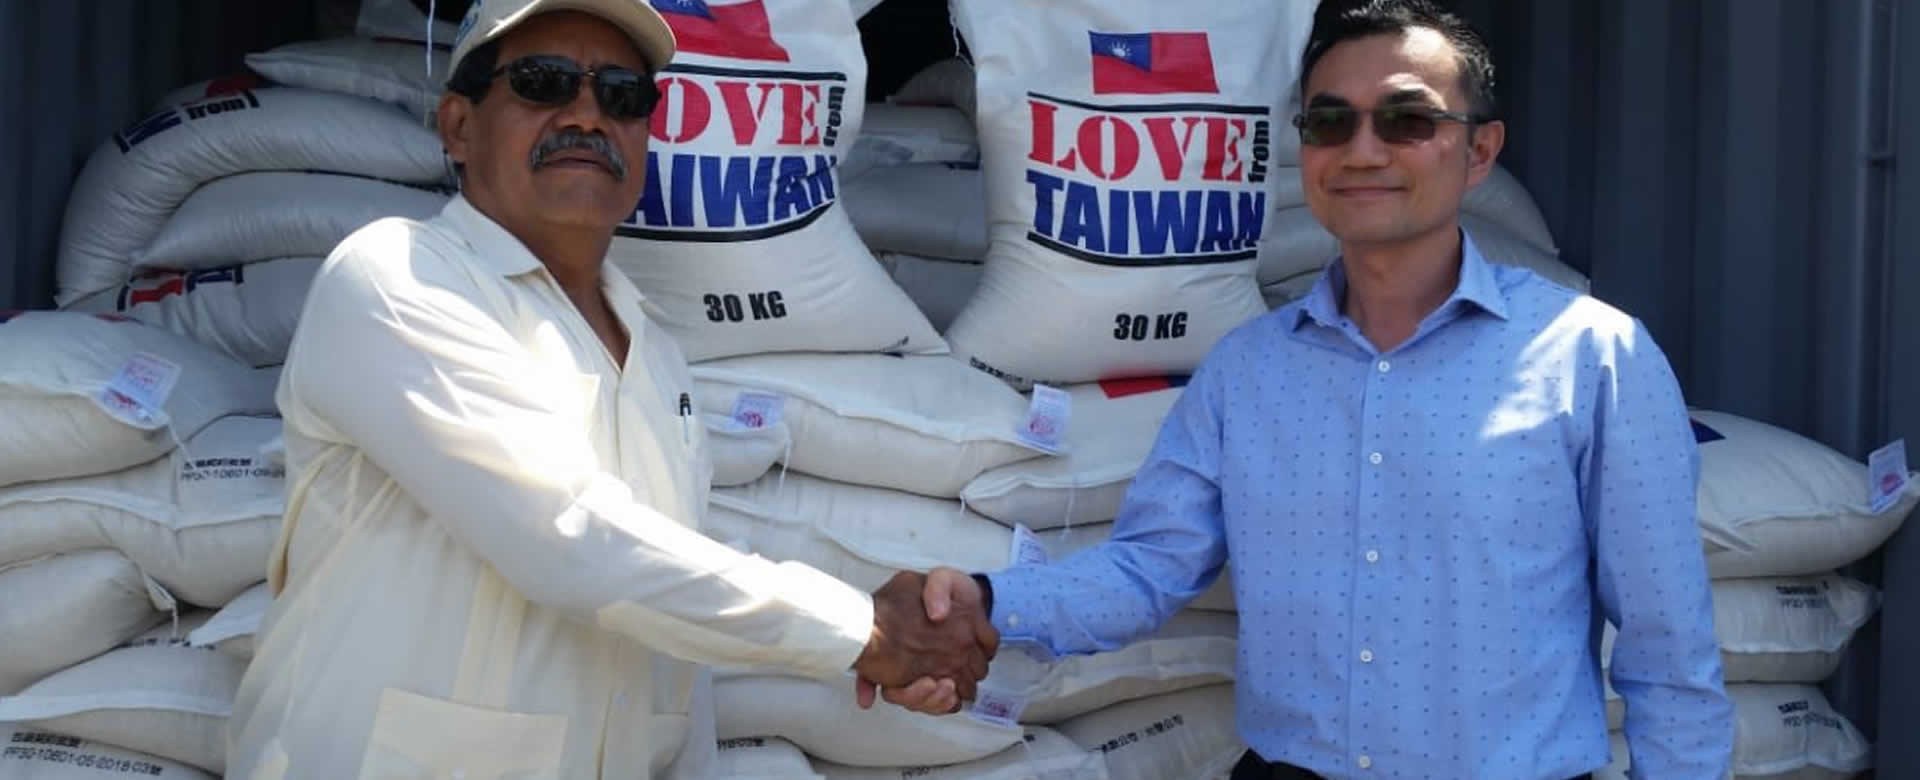 La República de China (Taiwán), dona al país 440 toneladas de arroz